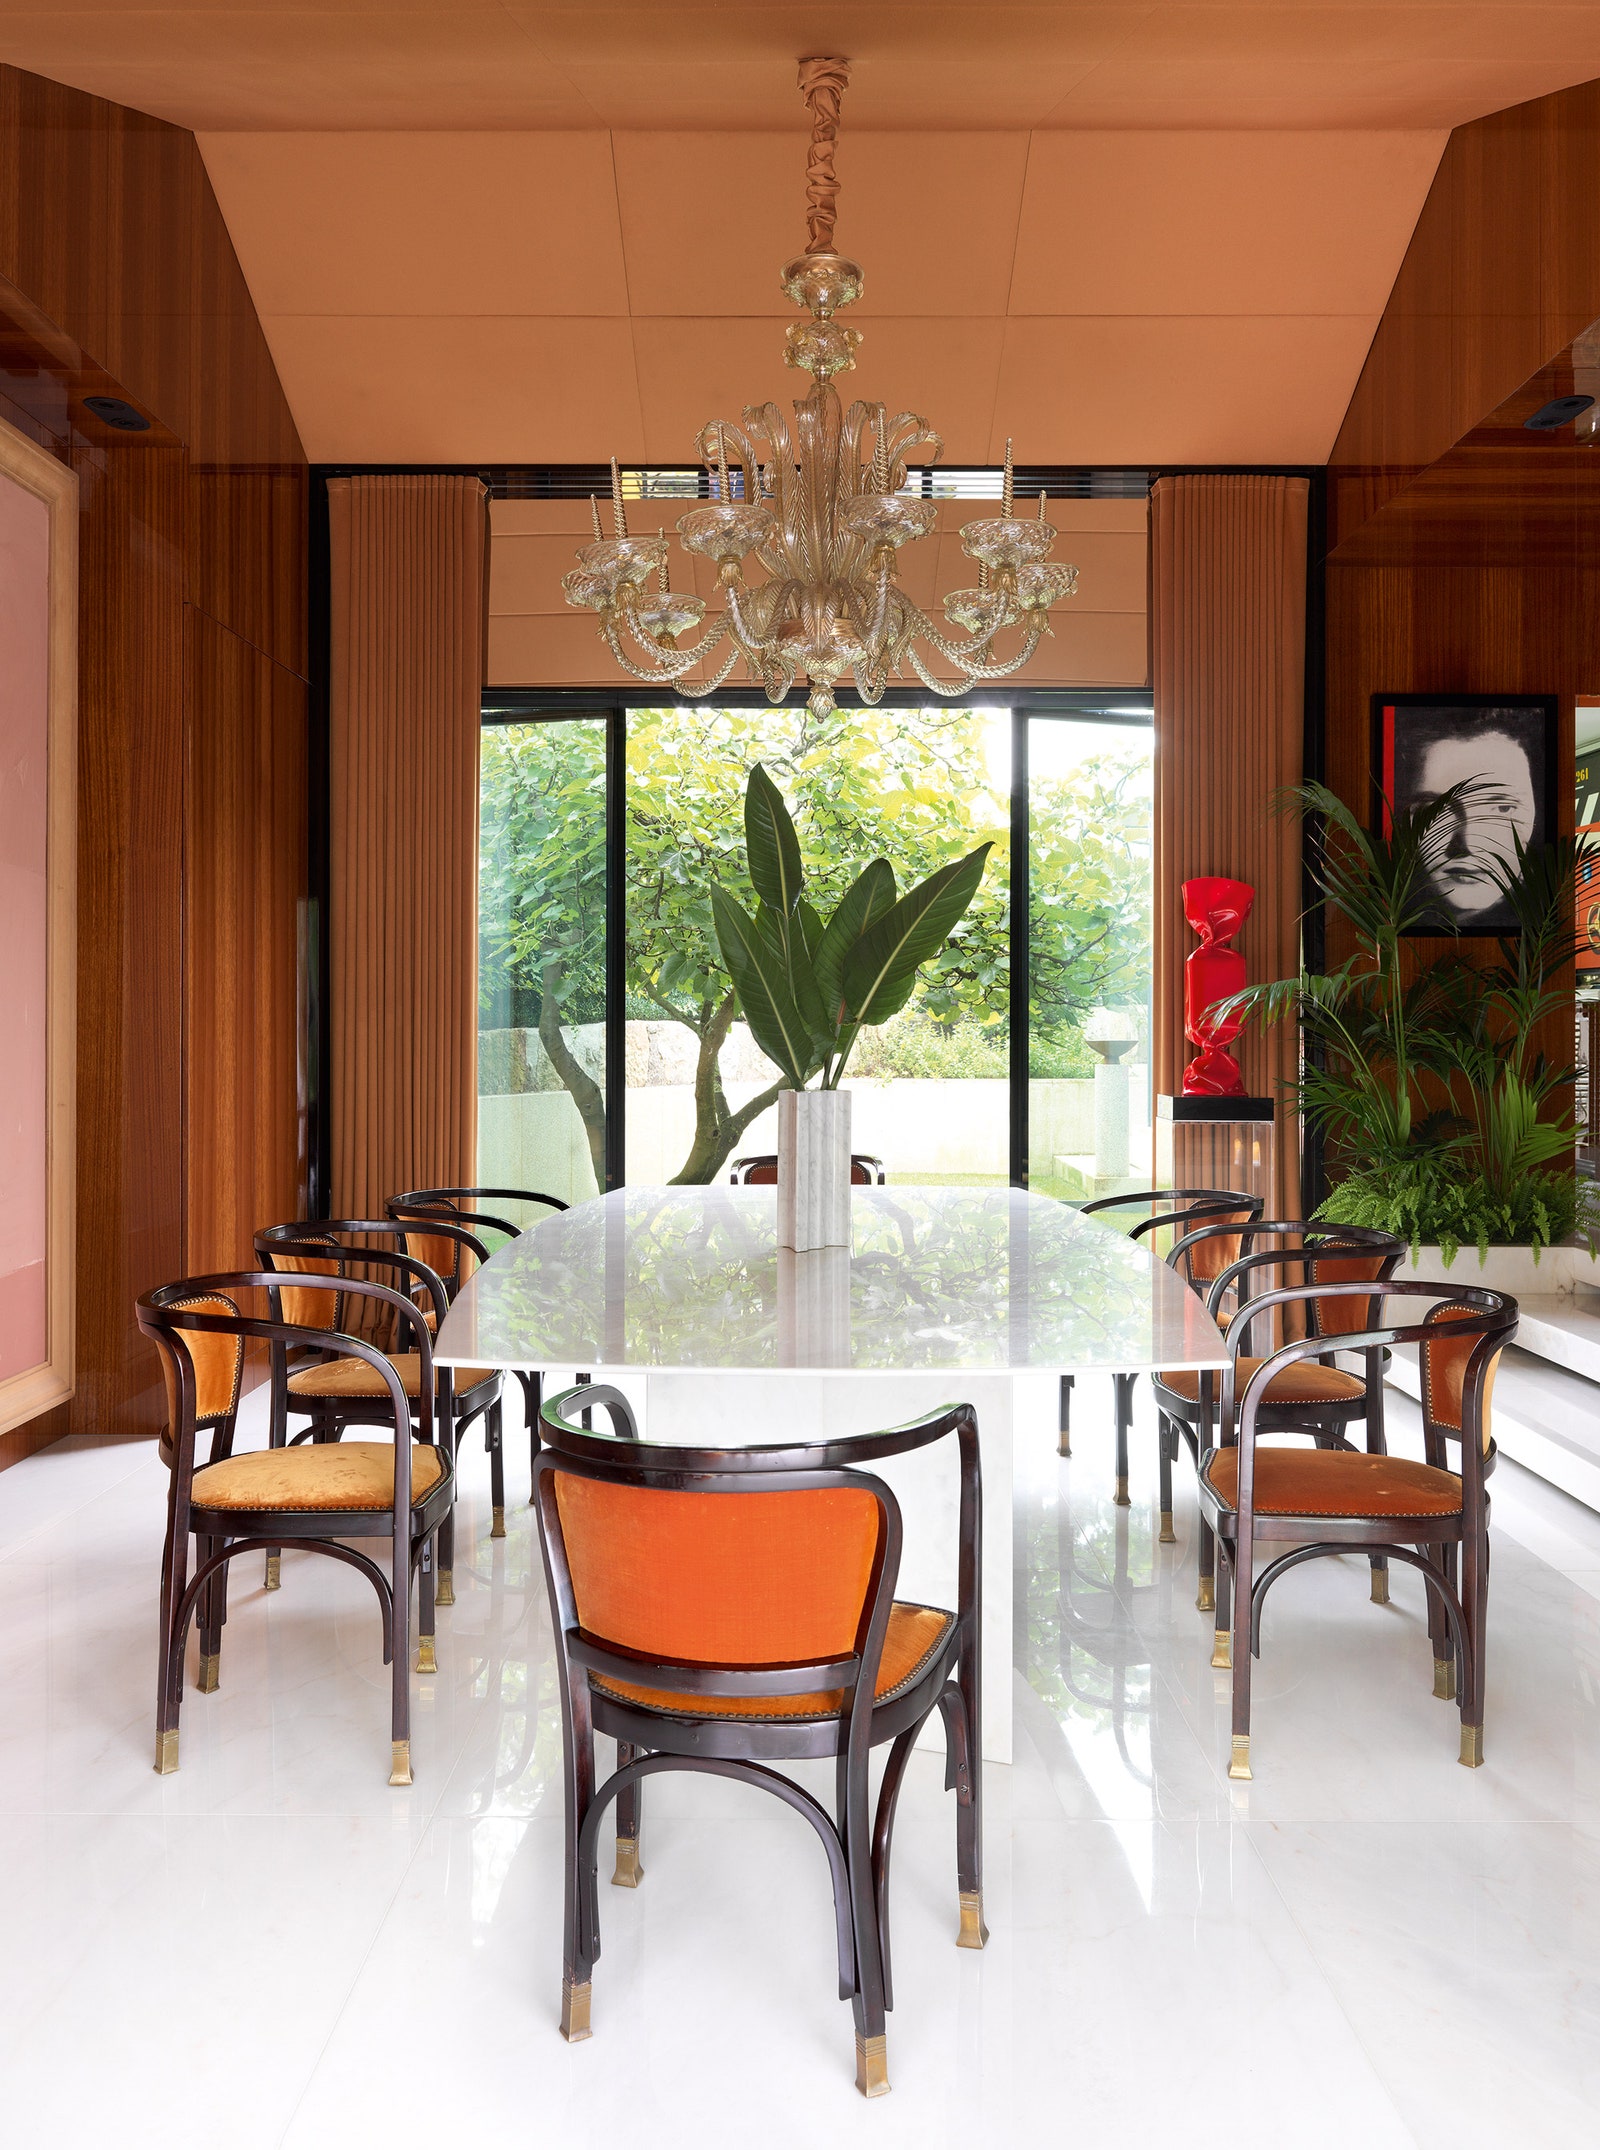 Обеденный стол из мрамора сделан на заказ стулья по дизайну Густава Зигеля винтажные ваза — работа Анджело Манджаротти...